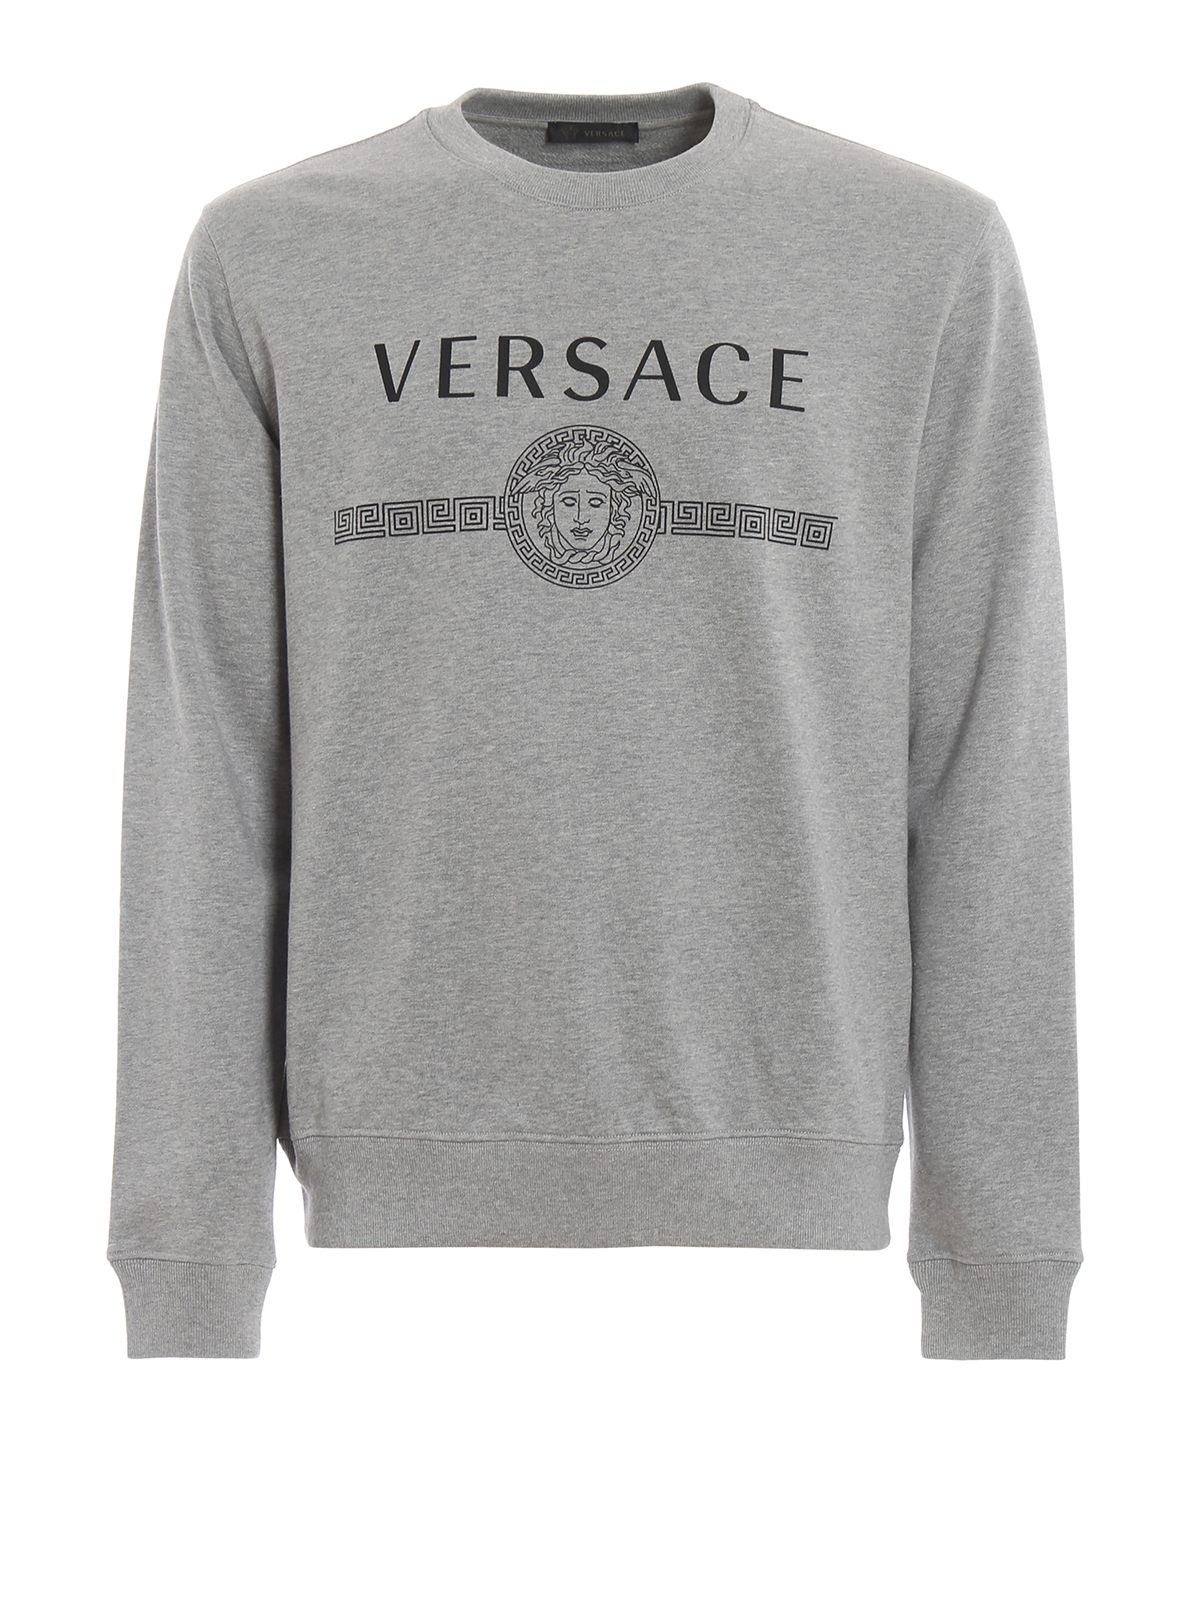 versace sweatshirt grey